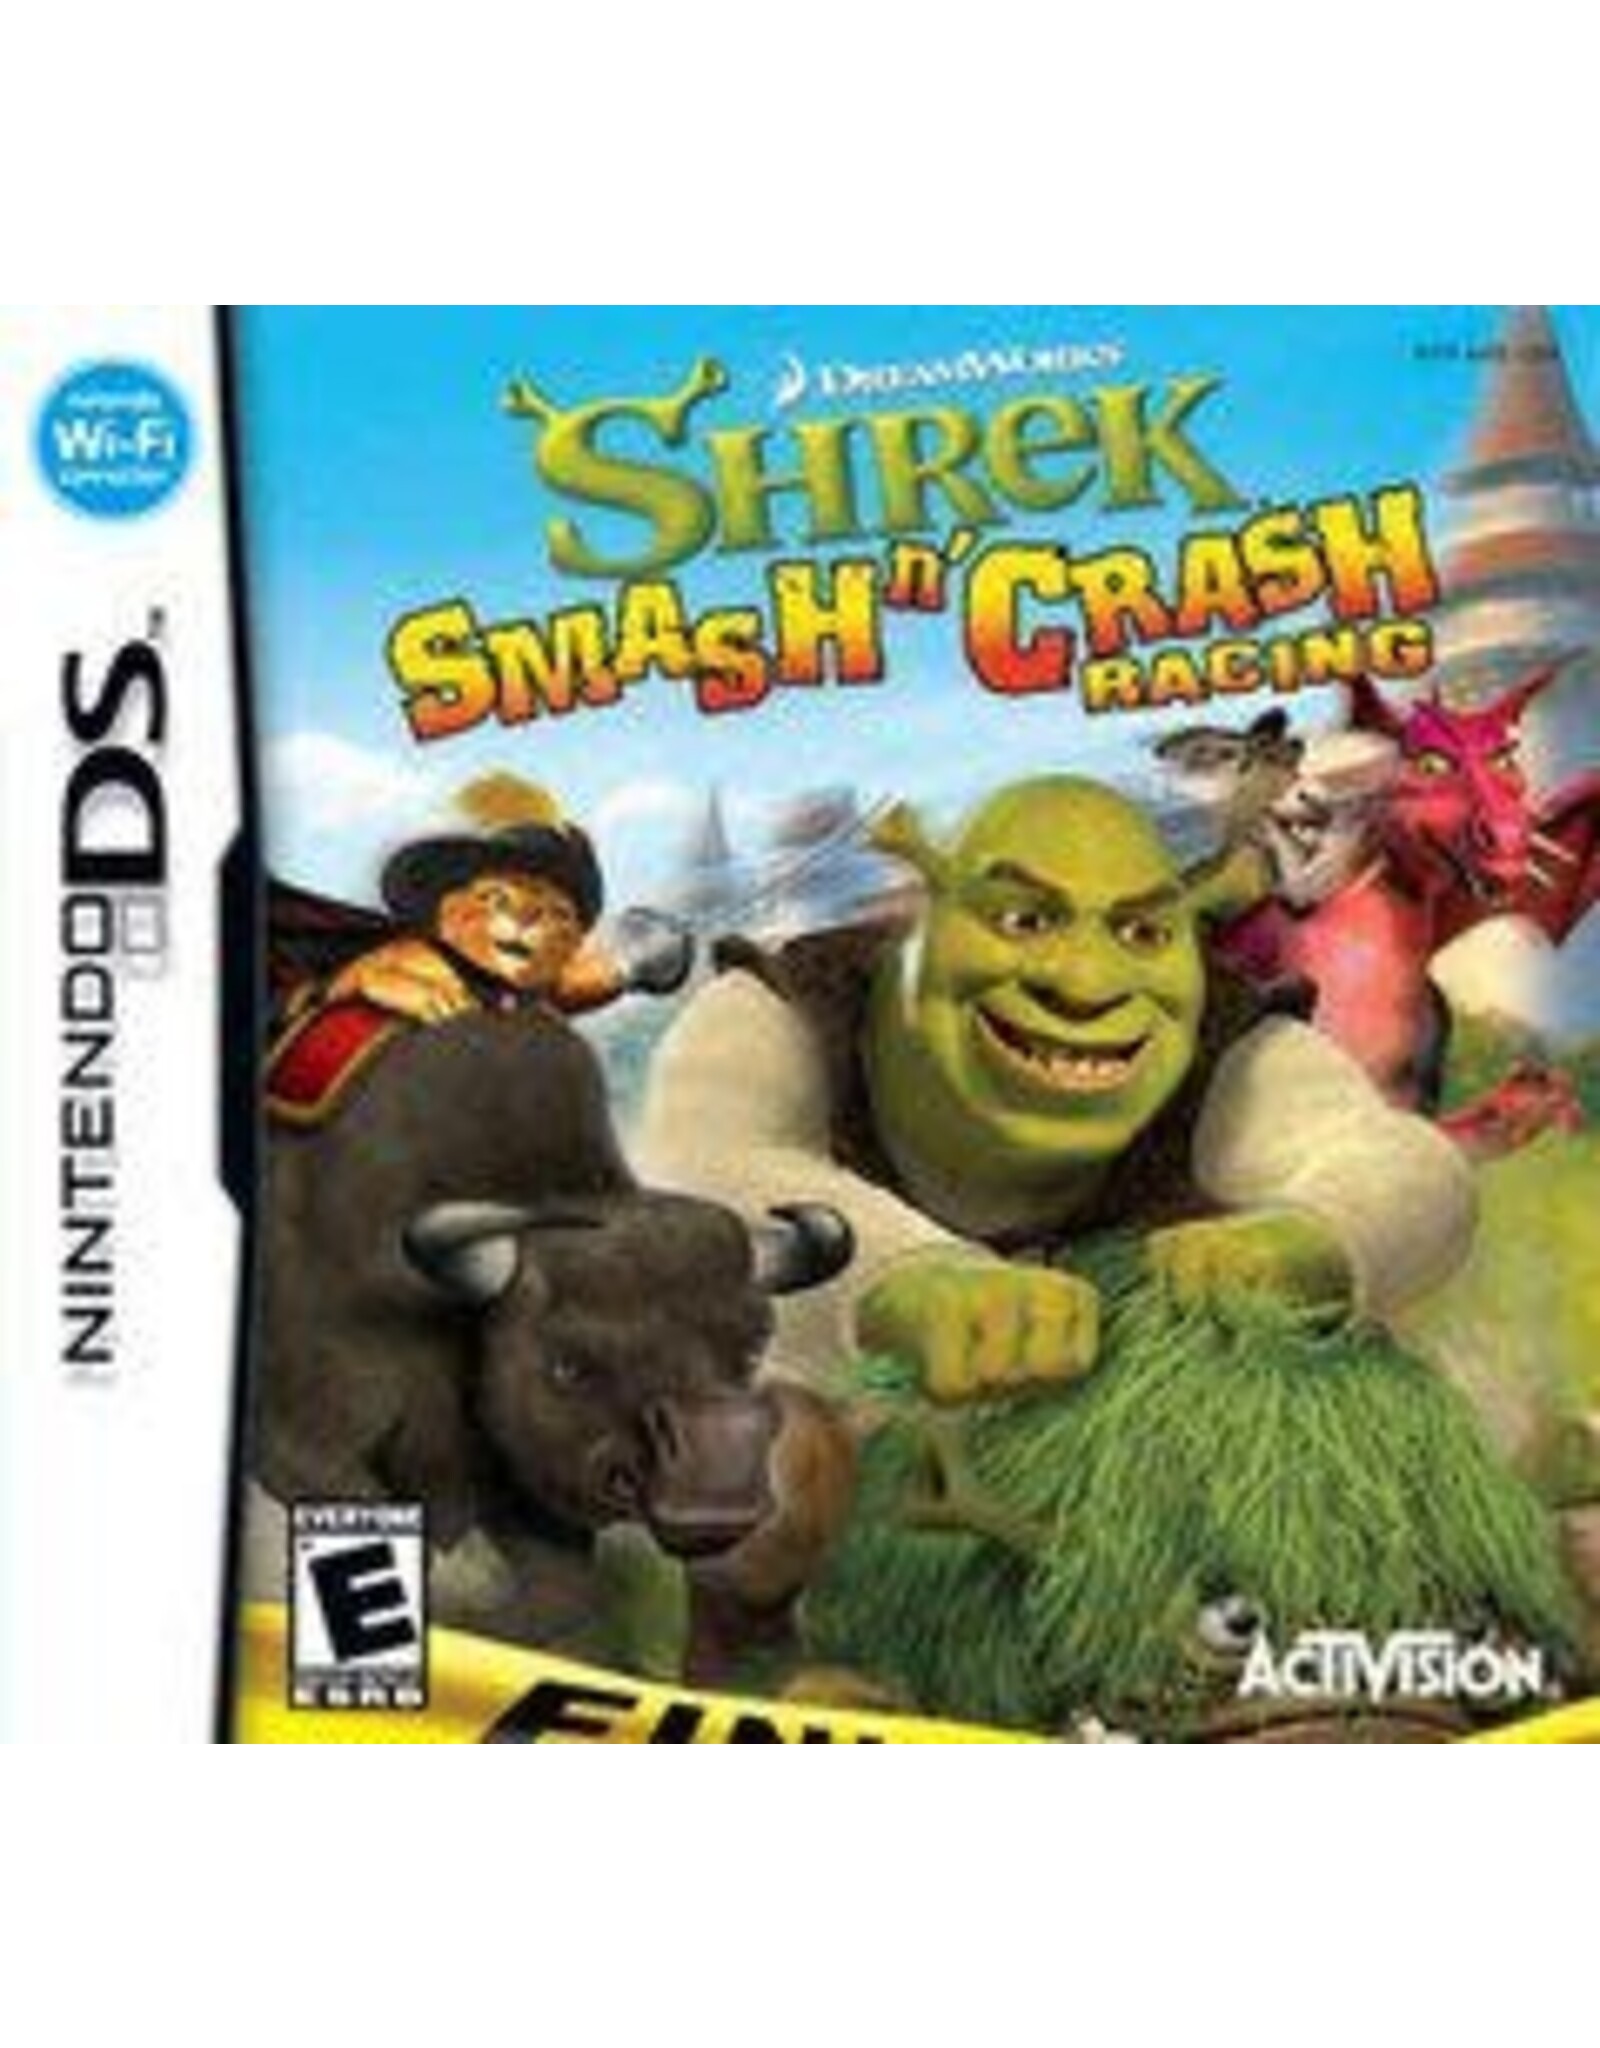 Nintendo DS Shrek Smash and Crash Racing (Cart Only, Damaged Label)